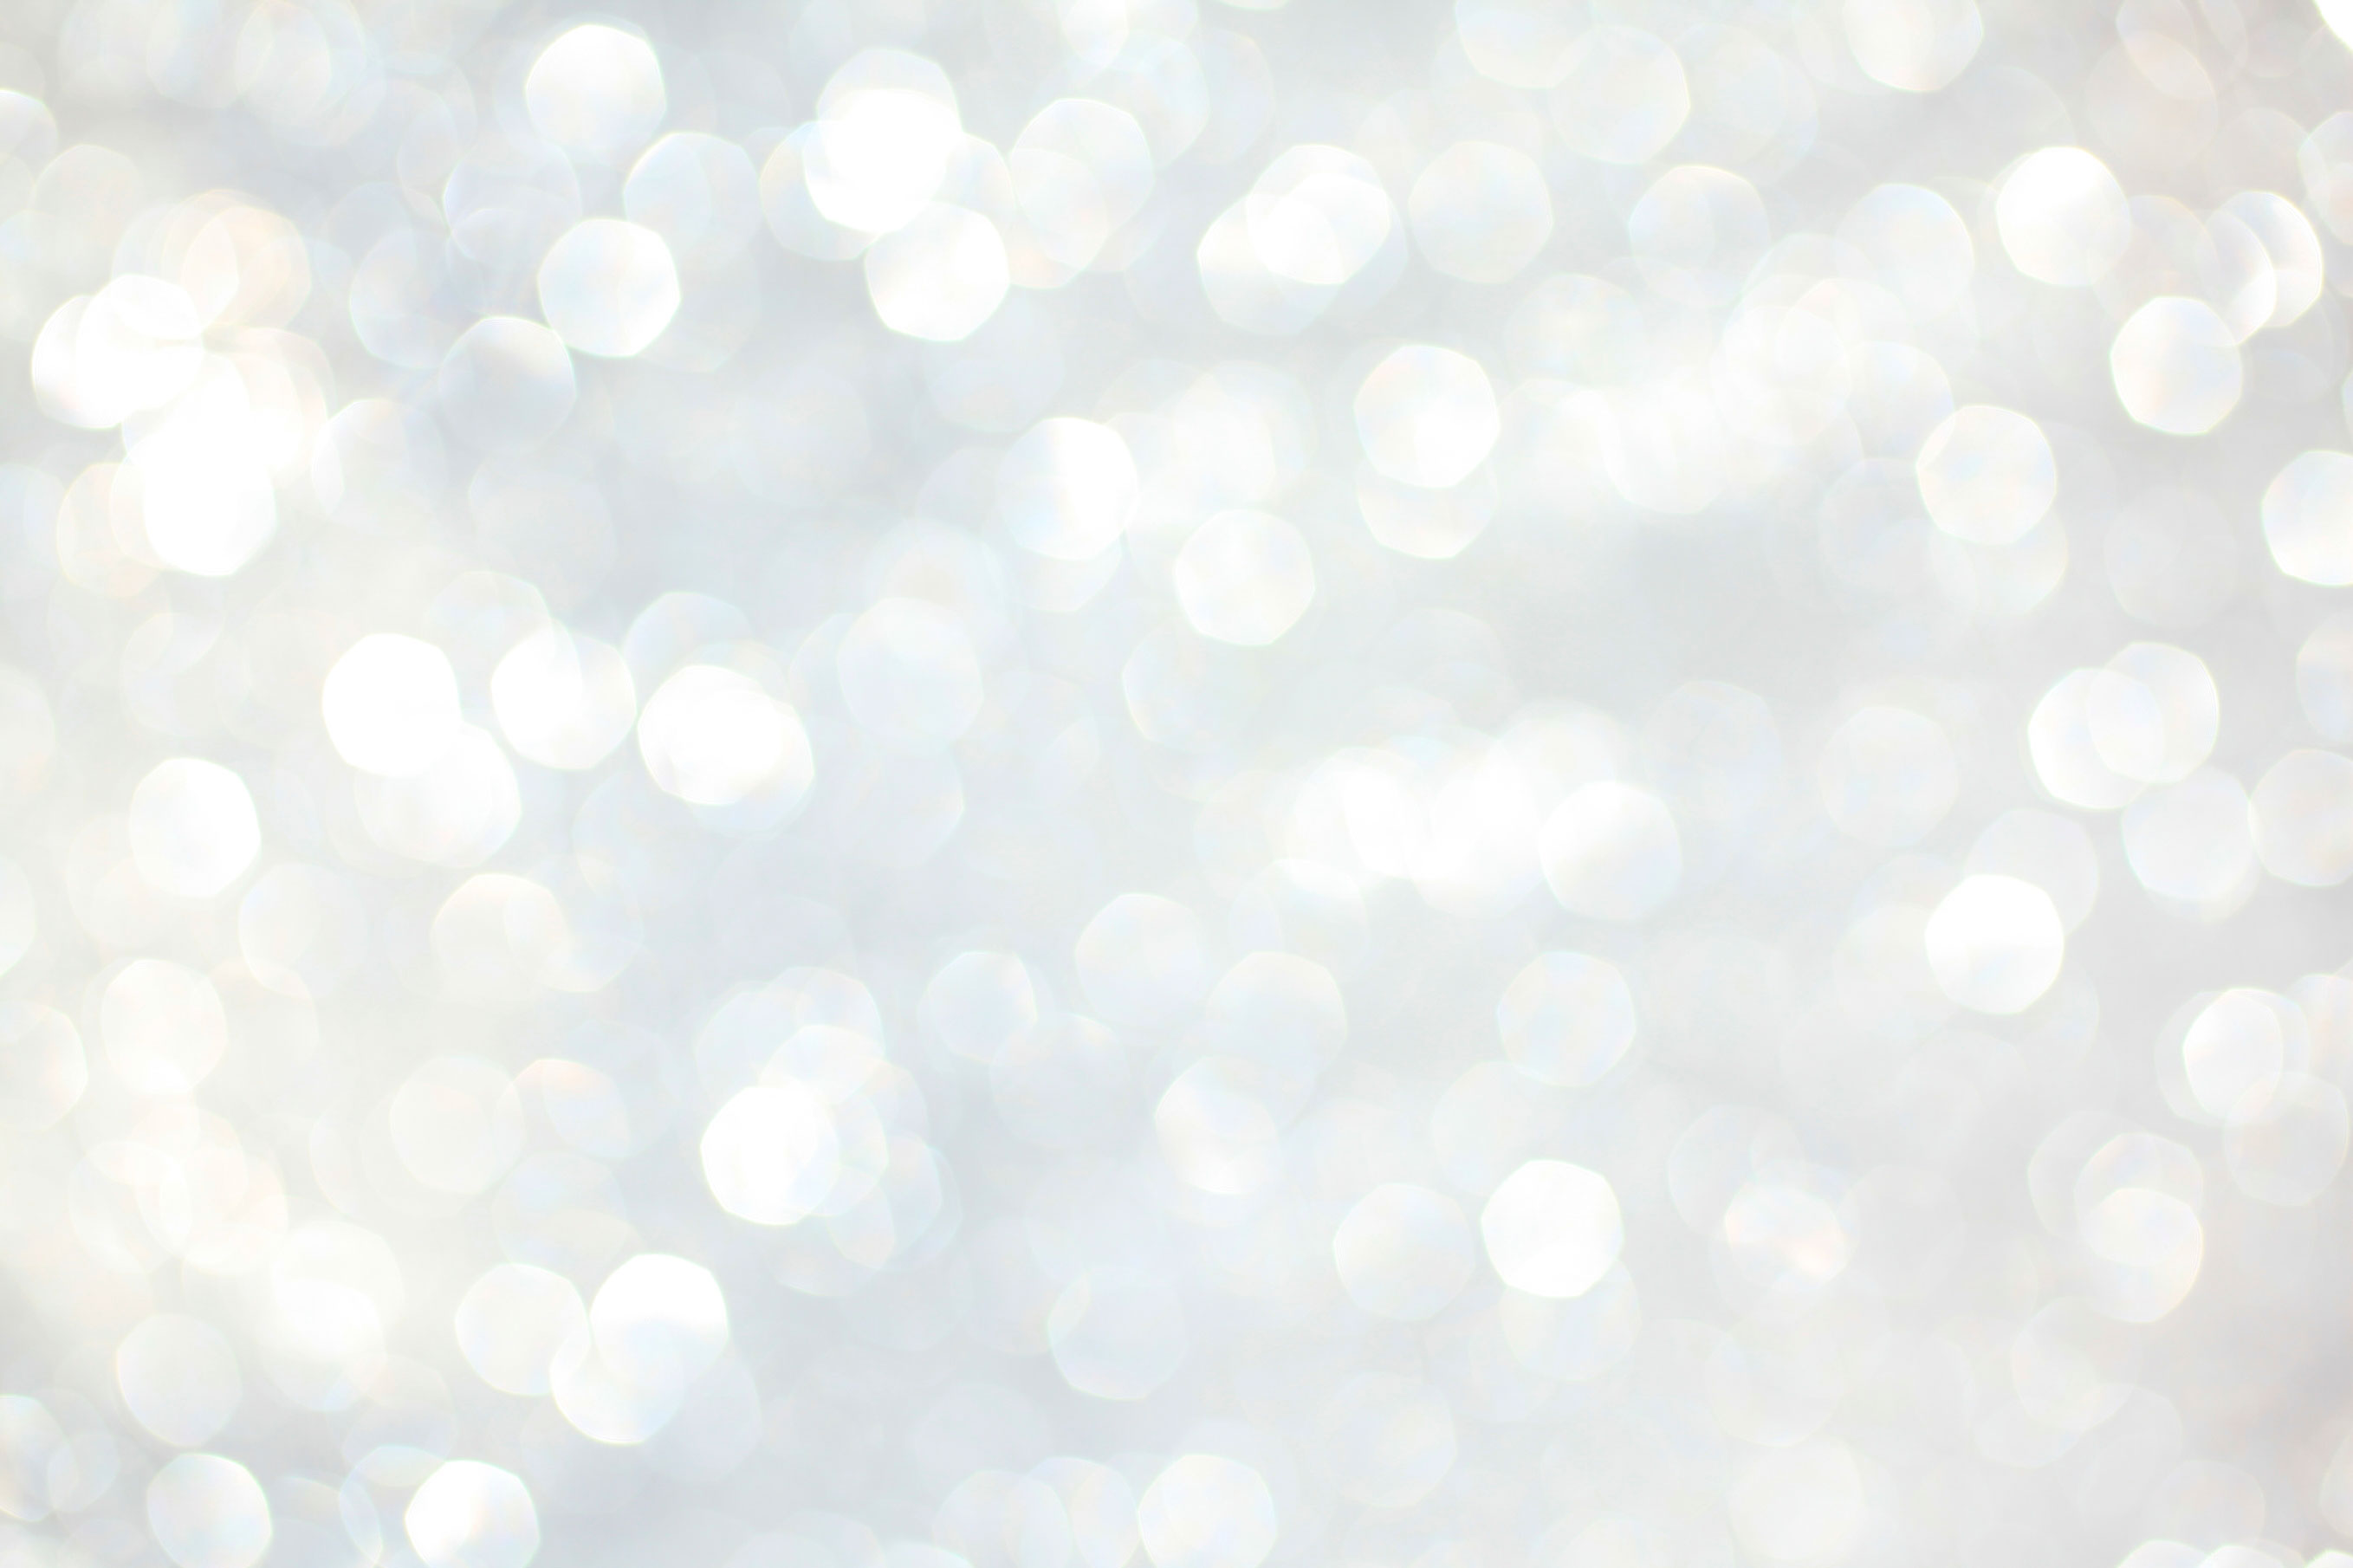 white glitter background tumblr